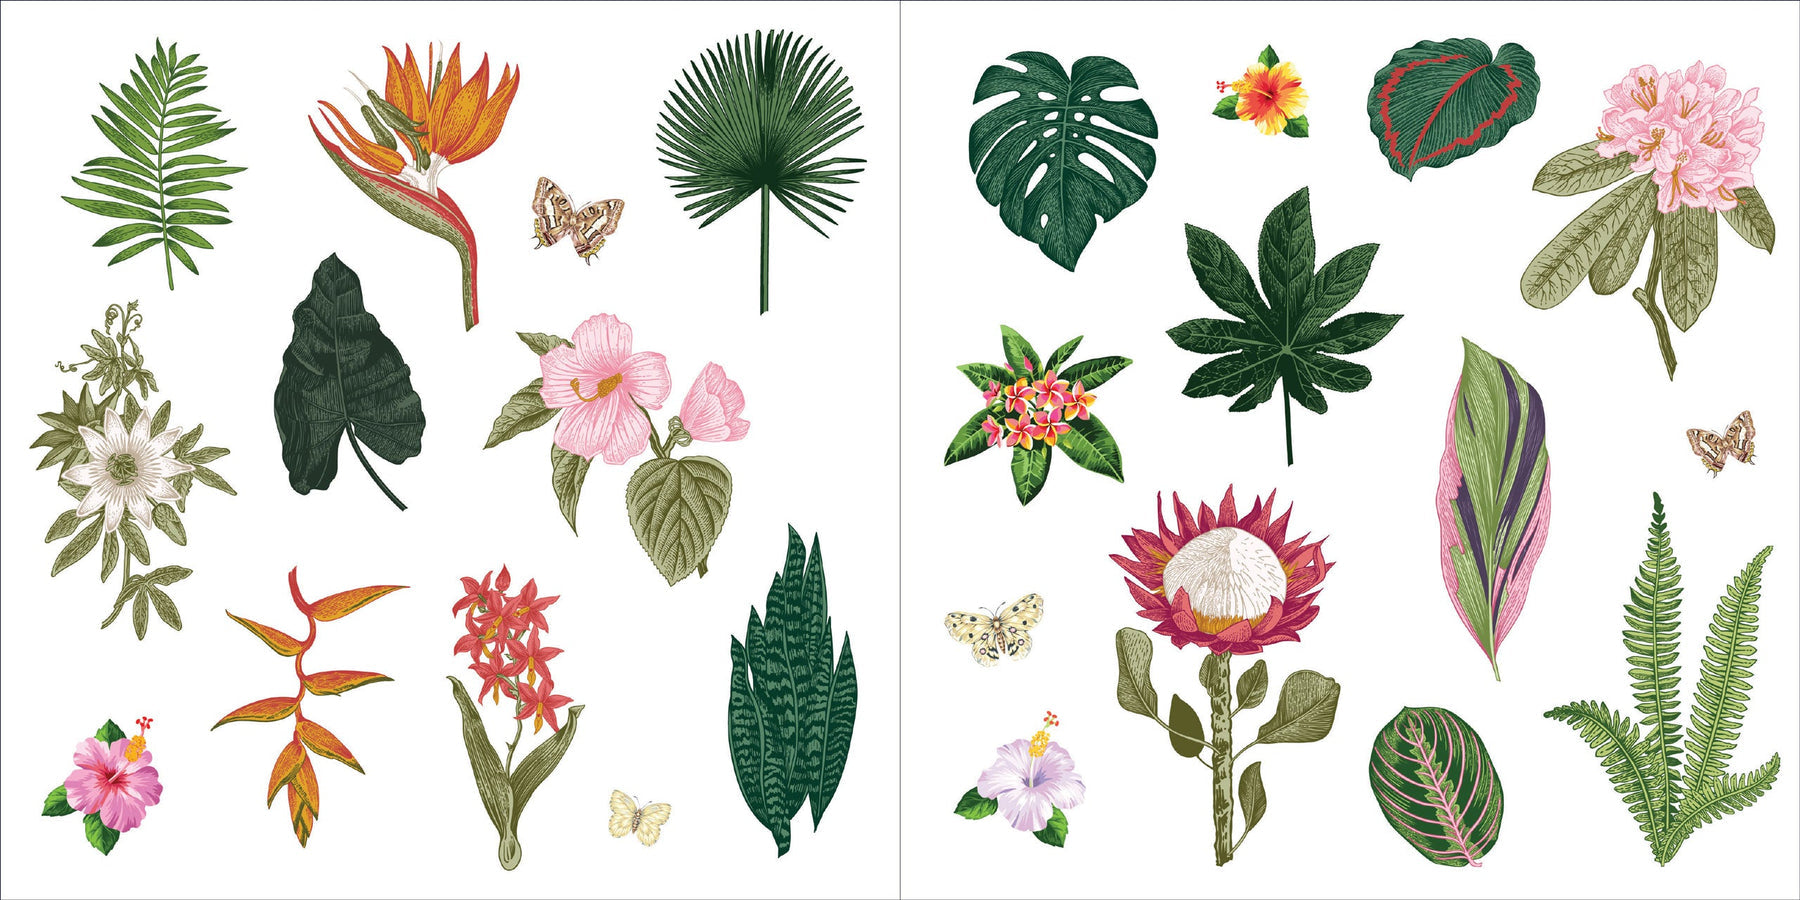 Botanicals Reusable Sticker Book